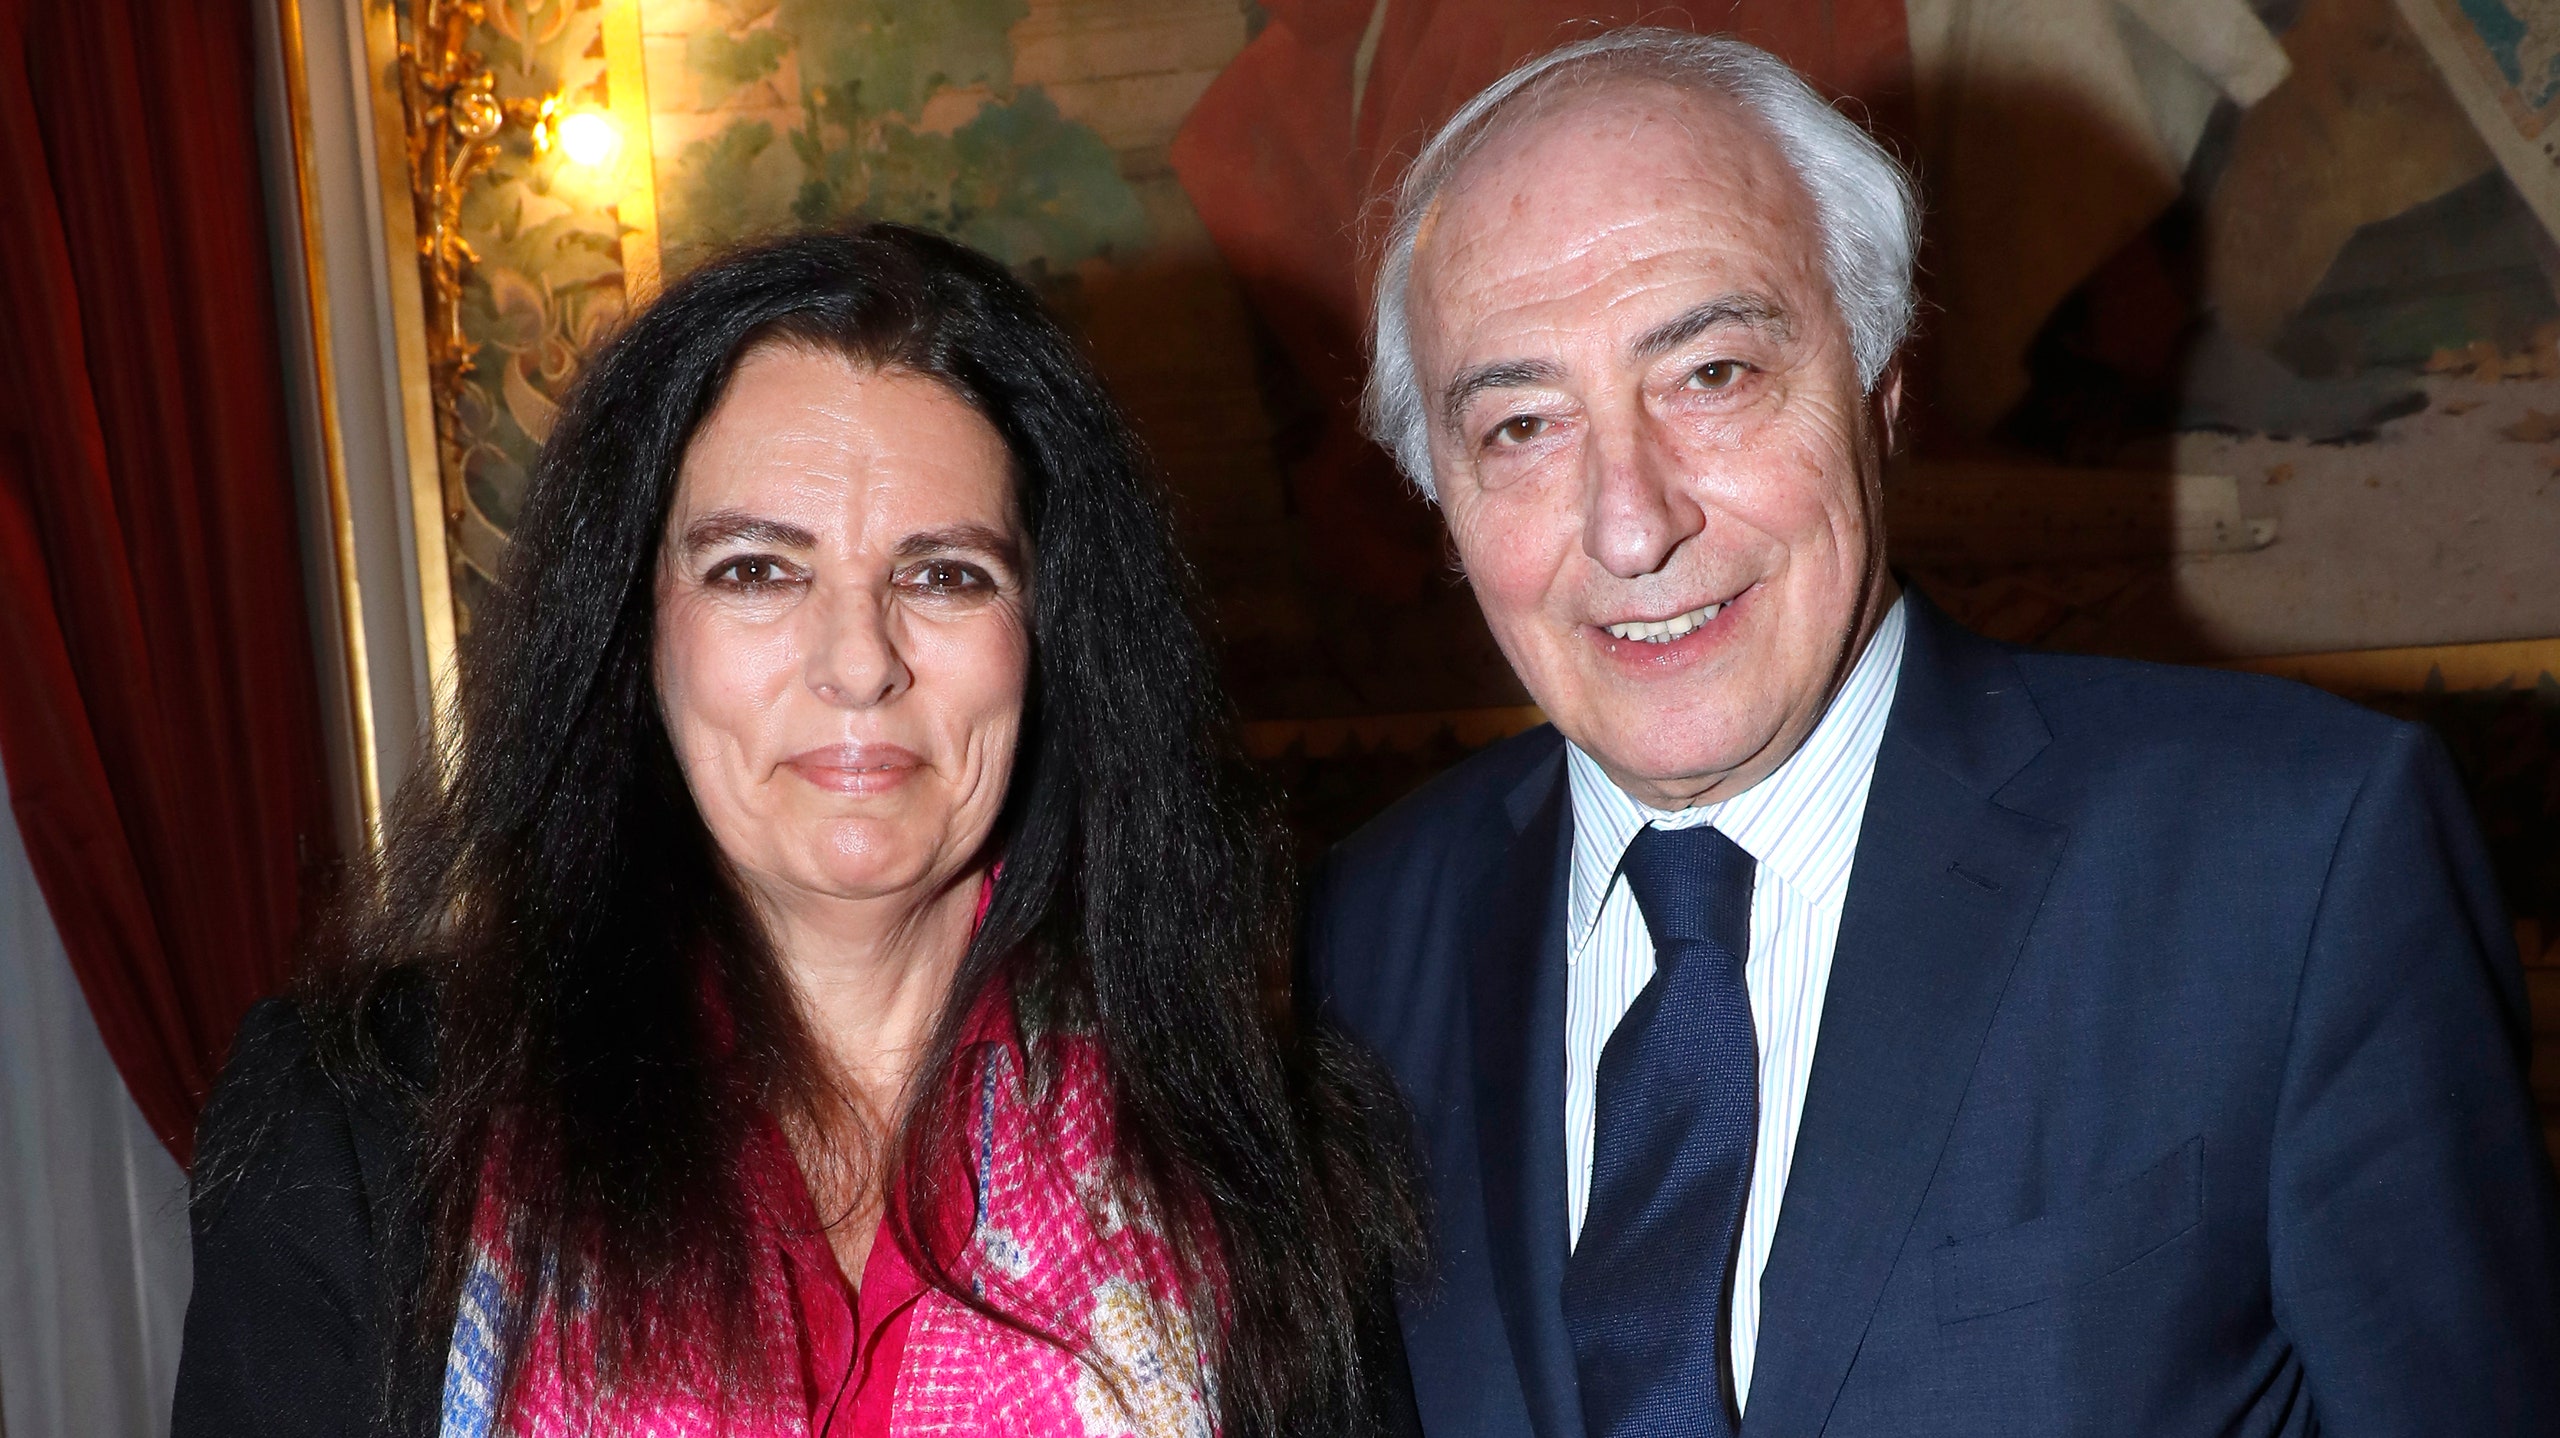 L'Oral и семья Беттанкур пожертвовали 200 миллионов евро на восстановление НотрДама